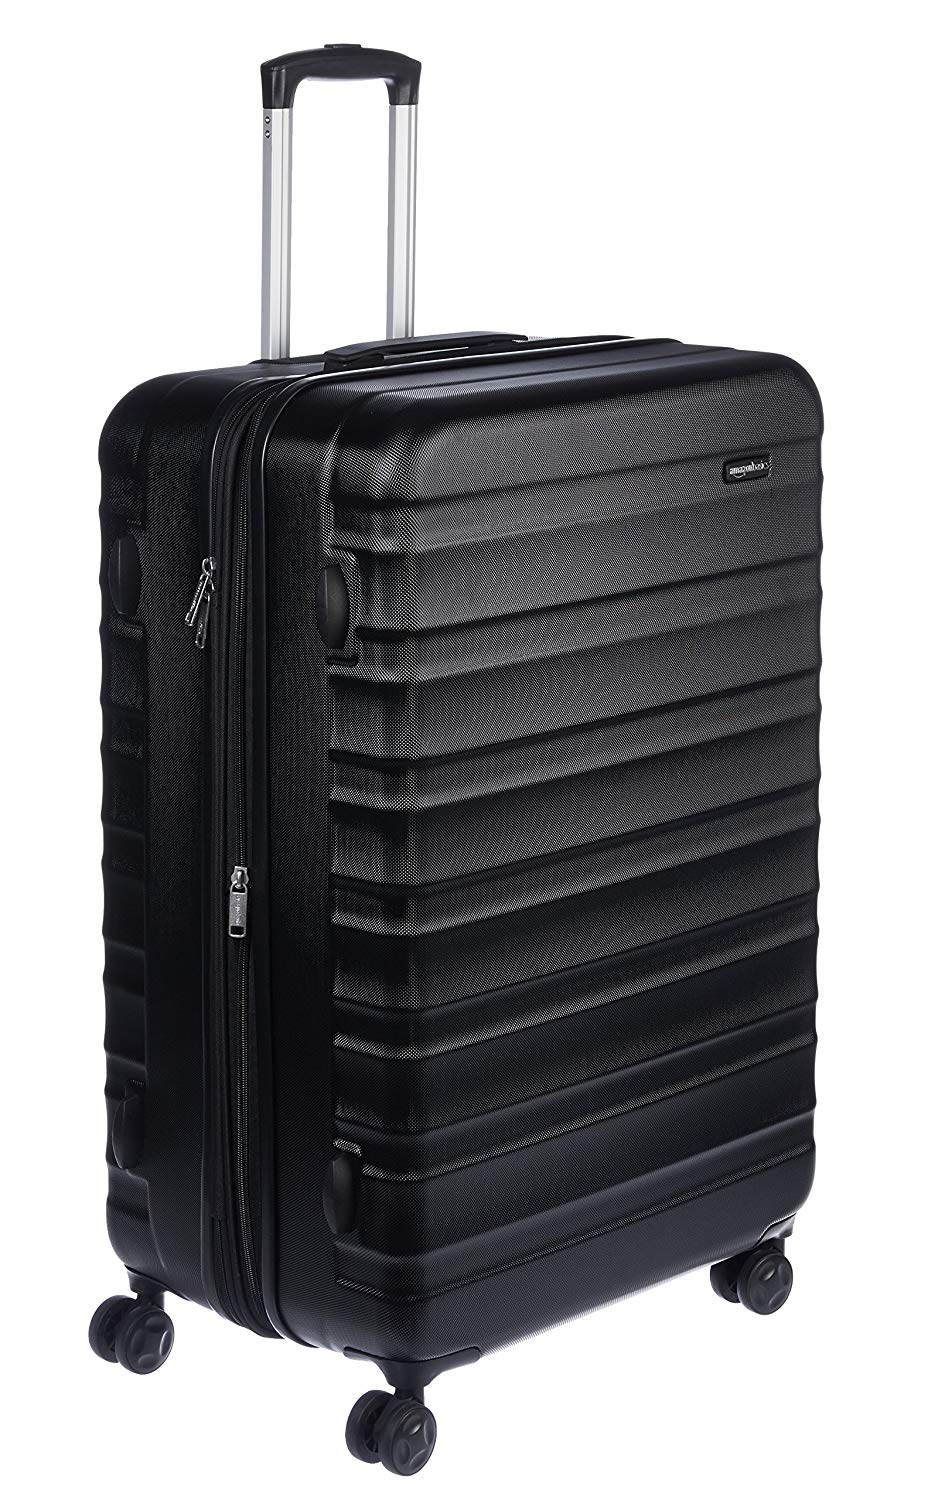  AmazonBasics Hardside Spinner Luggage